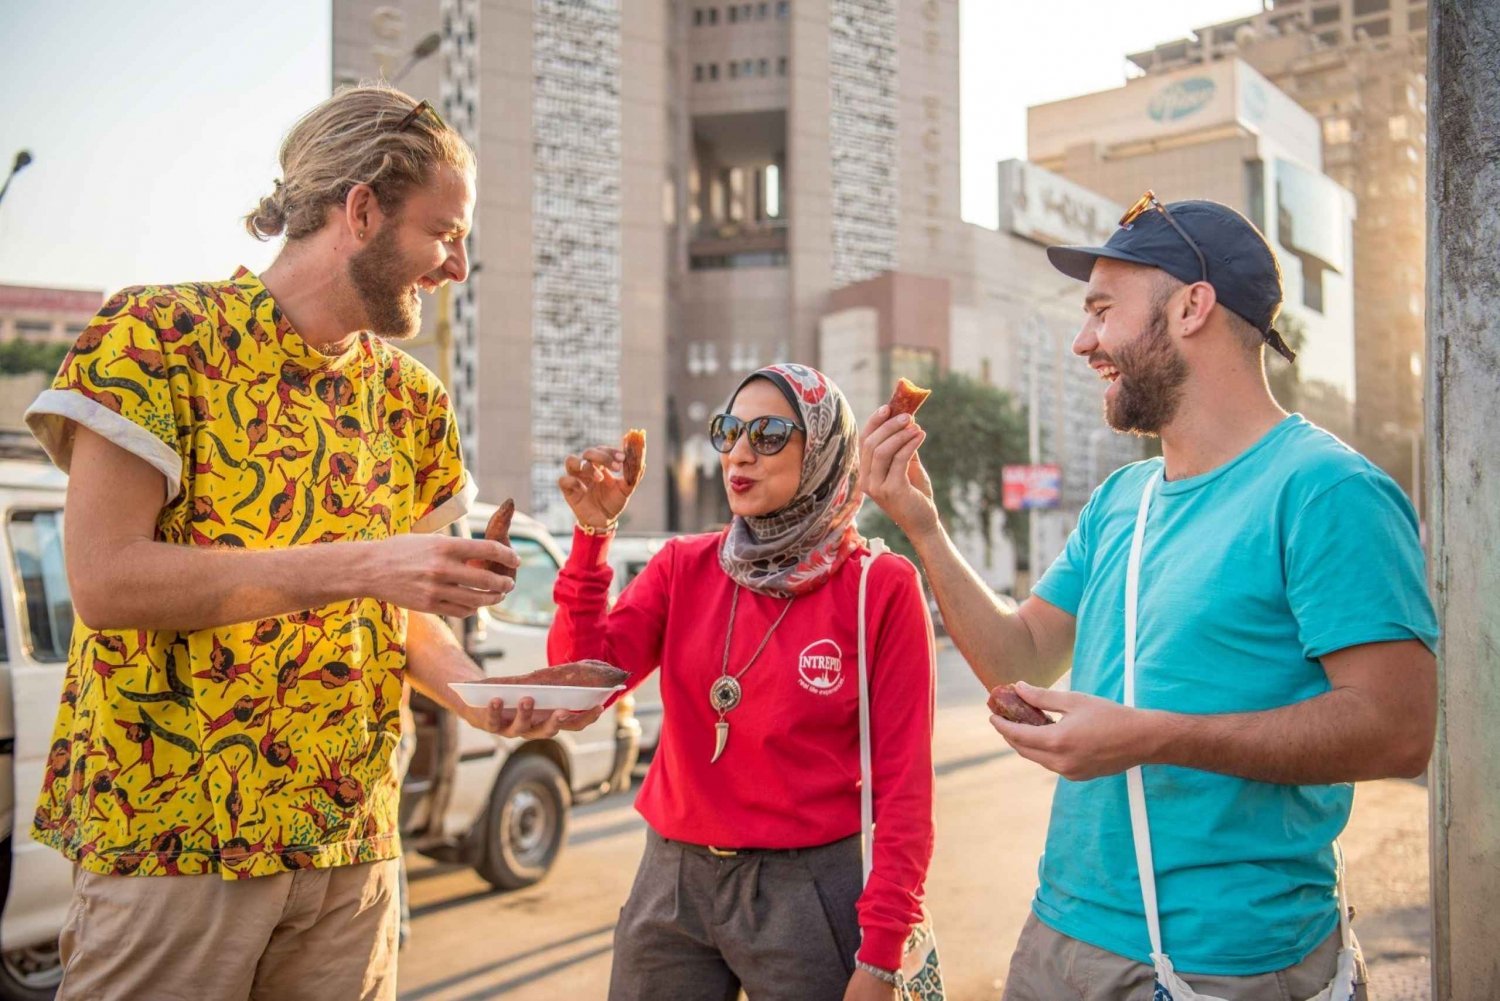 Privat Cairo: Skatte og Tut-tur